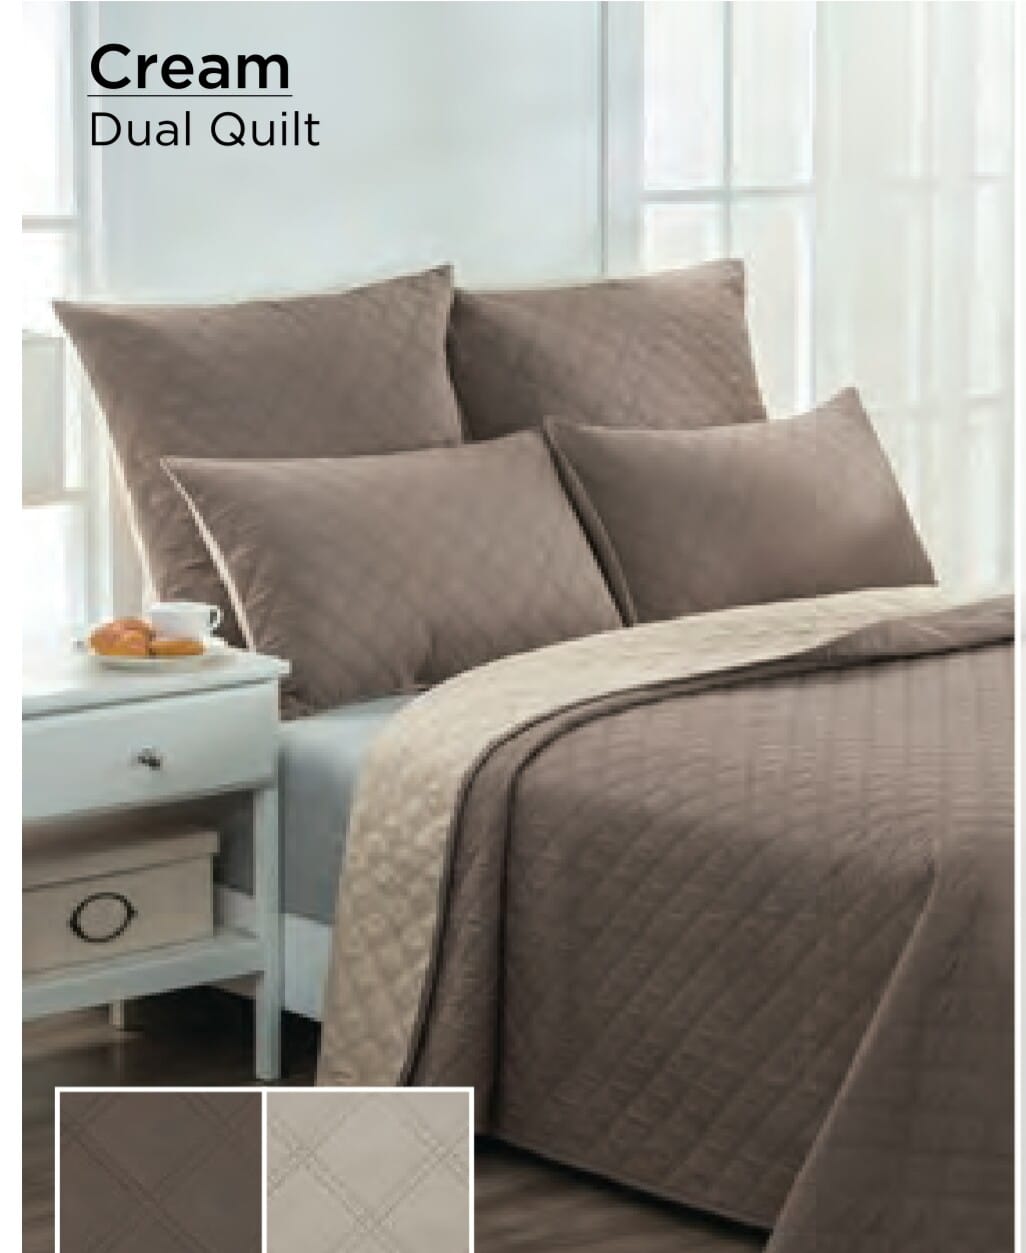 Quilt and 2 standard pillows